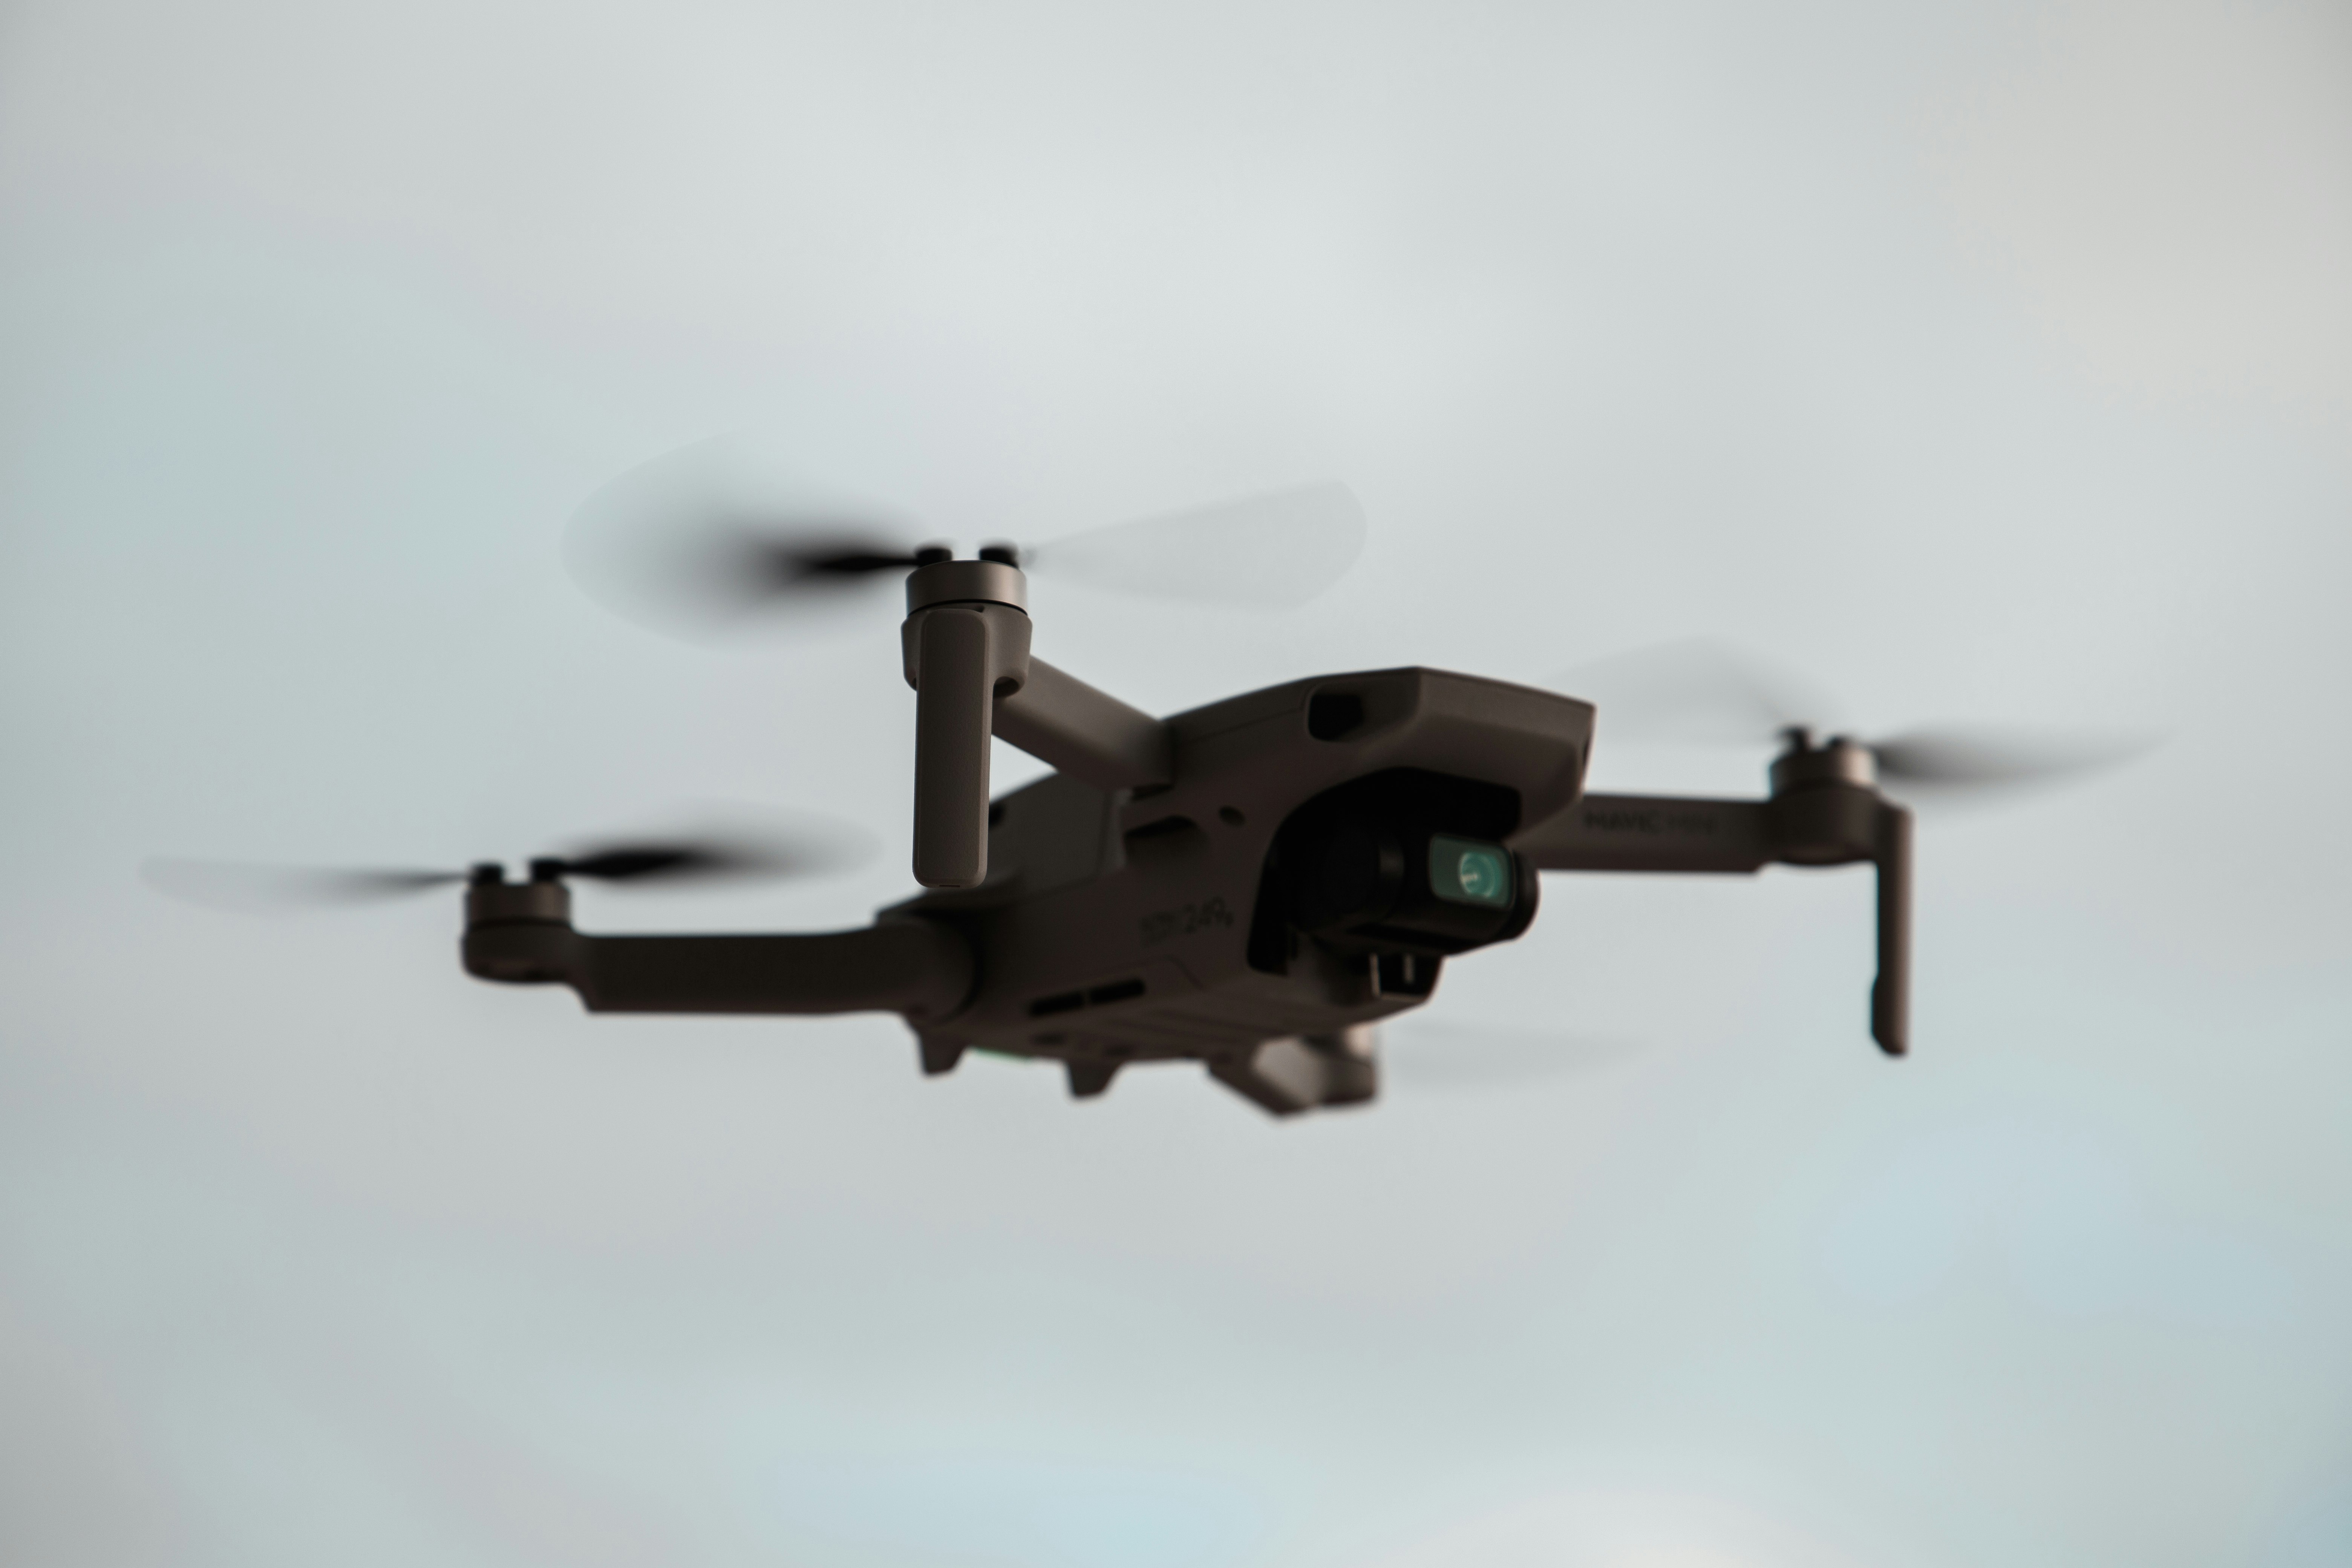 closeup photo of quadcopter